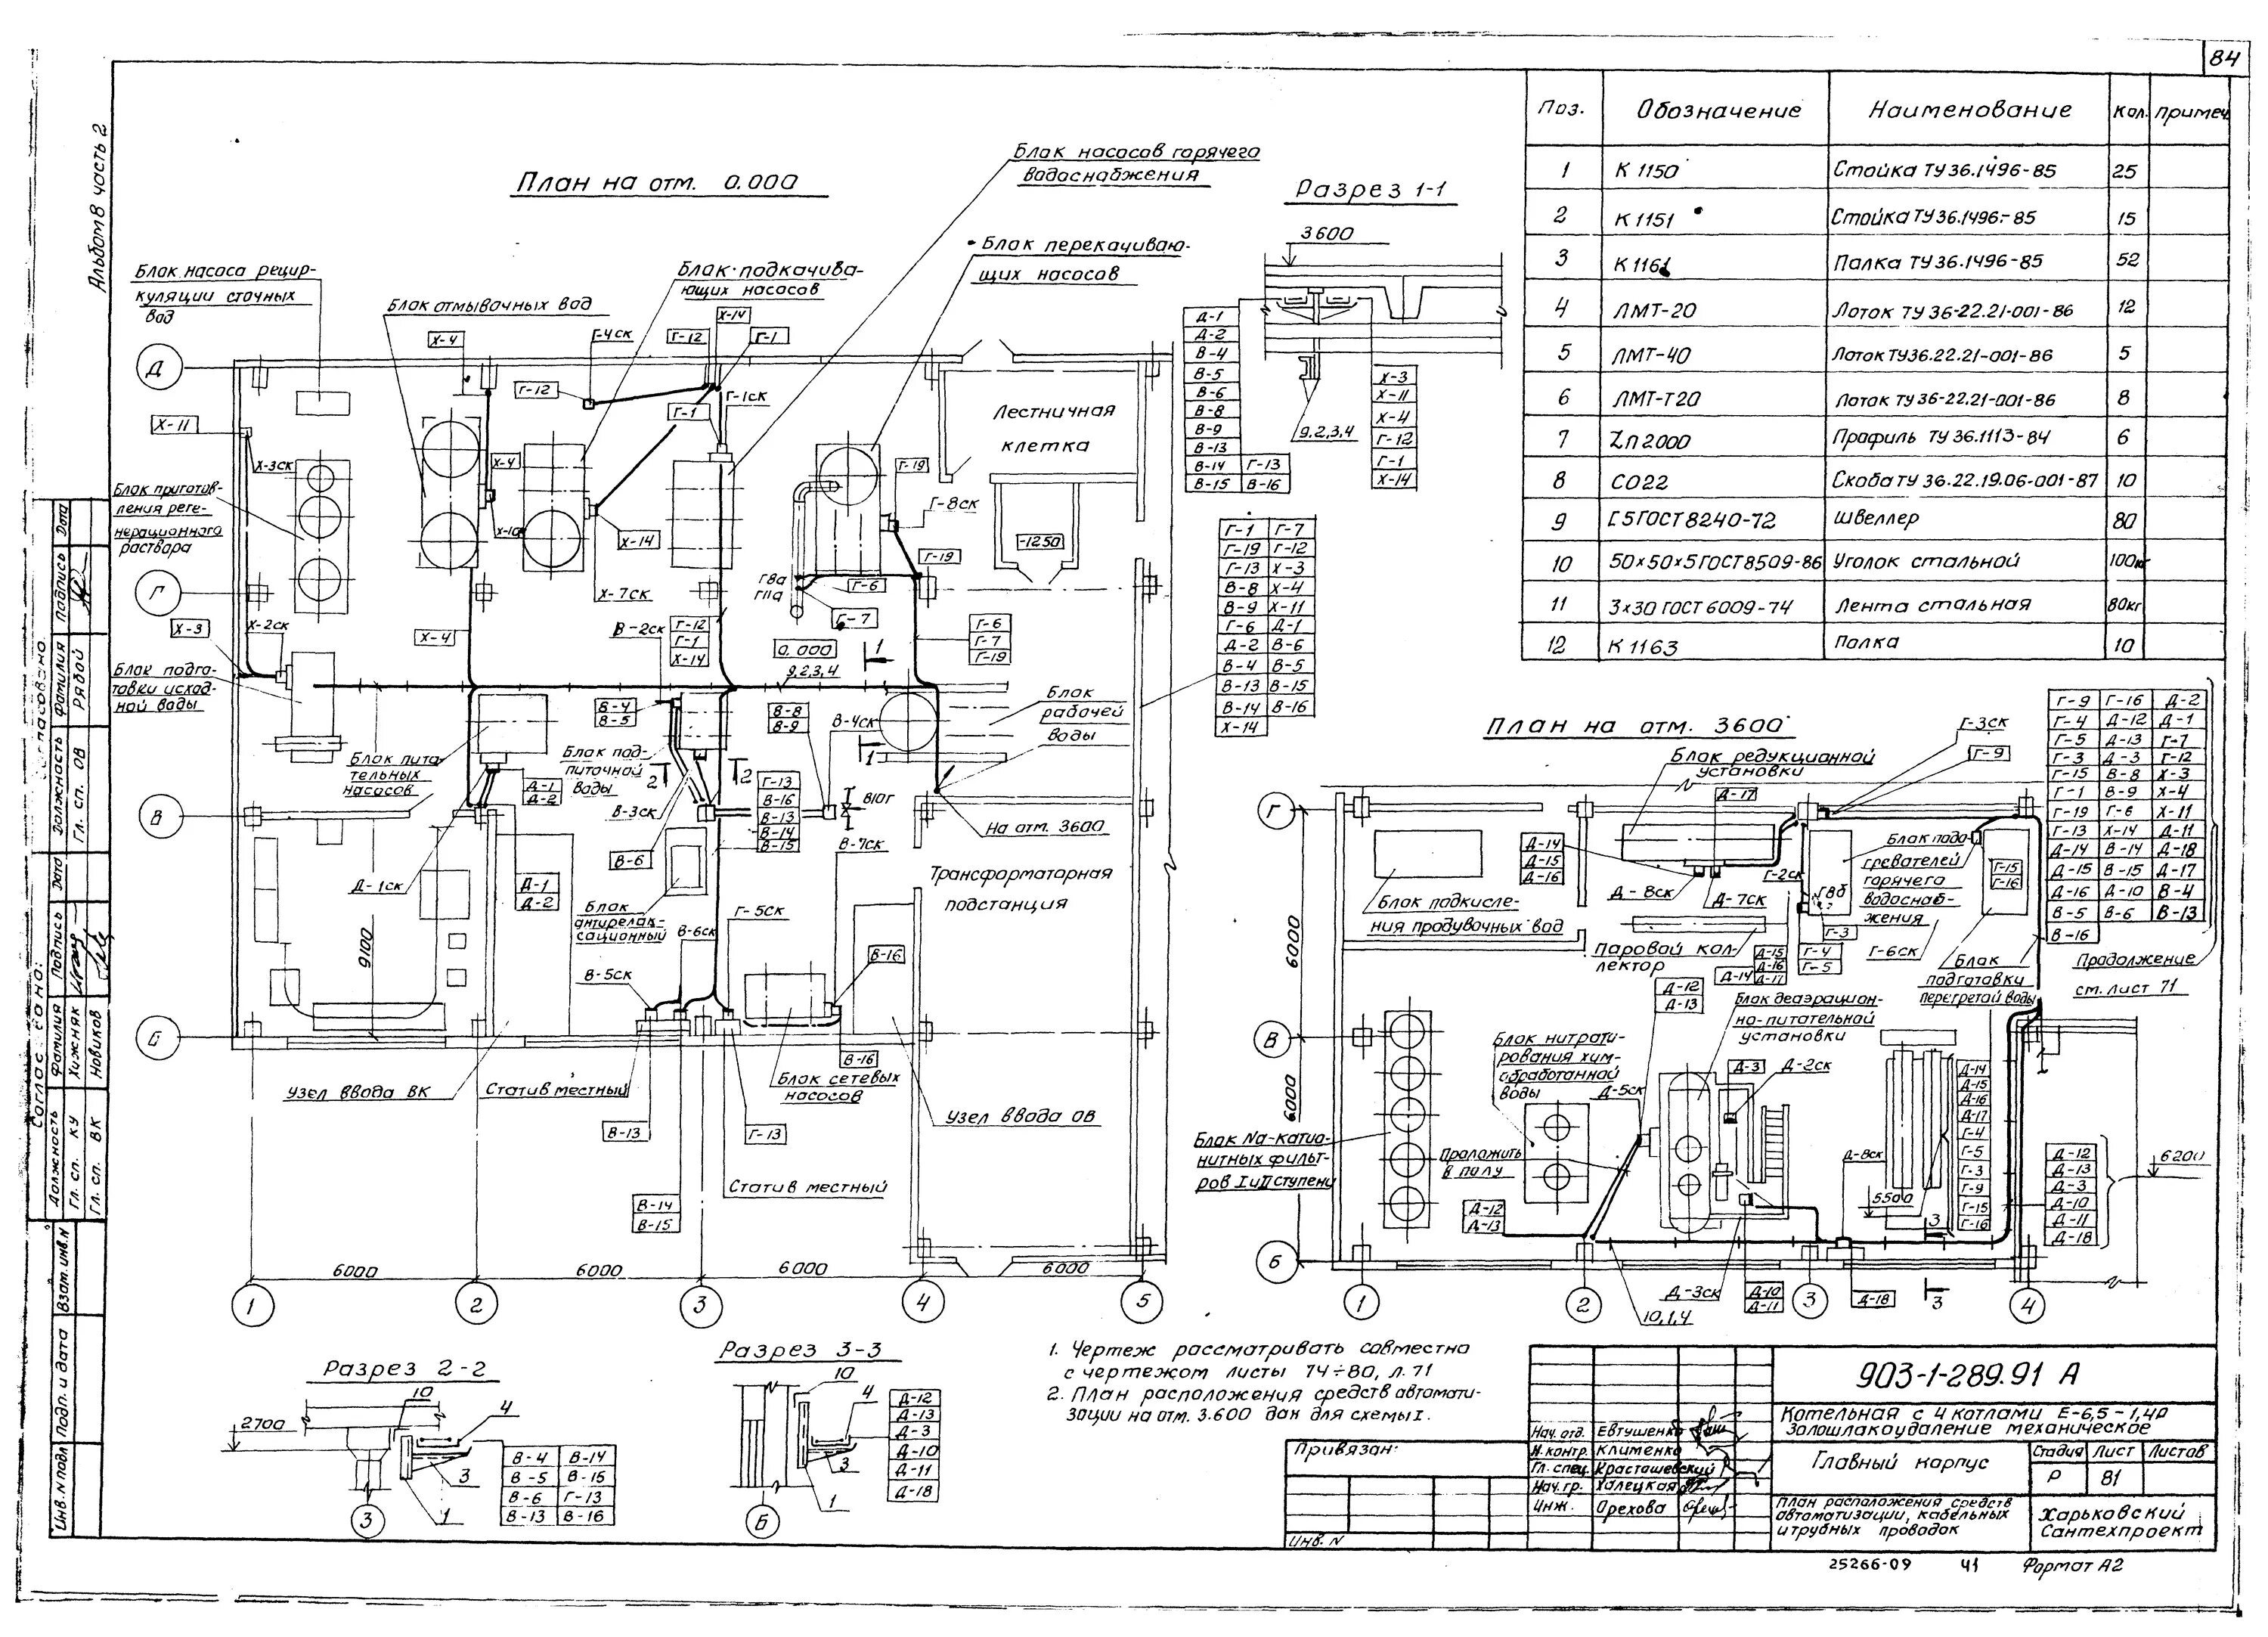 Схема расположения средств автоматизации и проводок. План расположения оборудования и кабельных проводок. План расположения оборудования и трубных проводок. План расположения средств автоматизации и проводок.